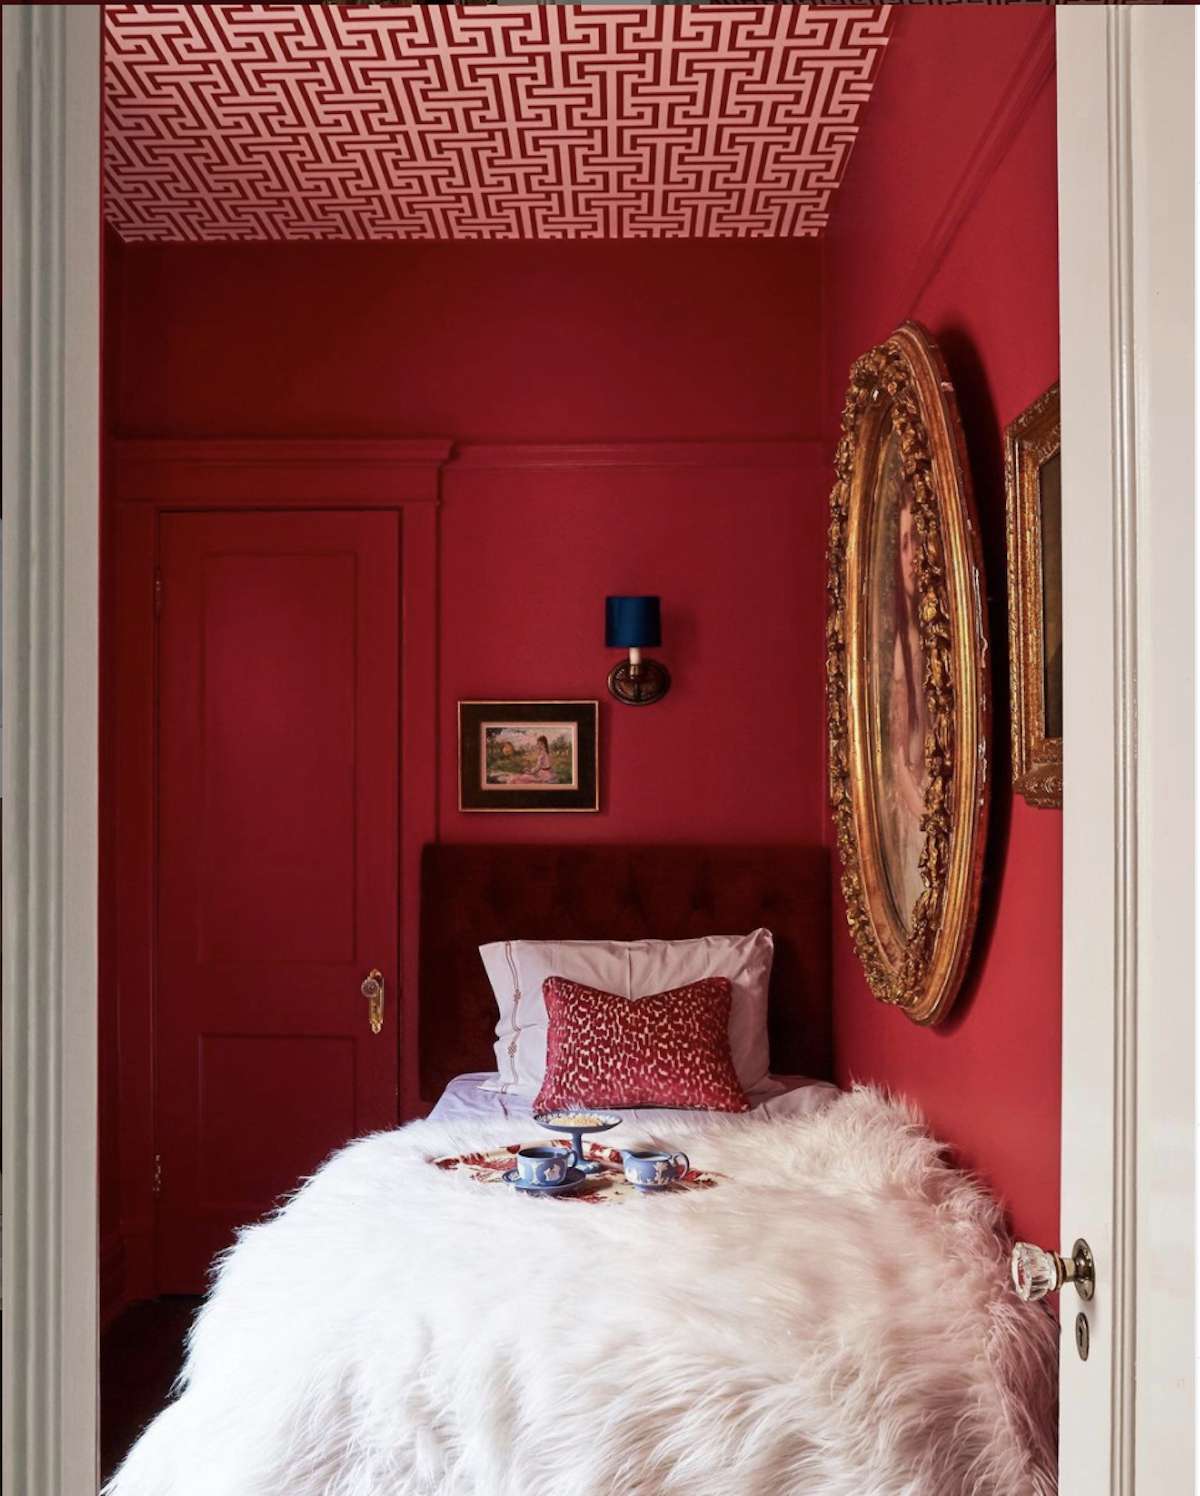 quarto com paredes vermelhas, teto com padrão vermelho e branco, cobertor branco fofo